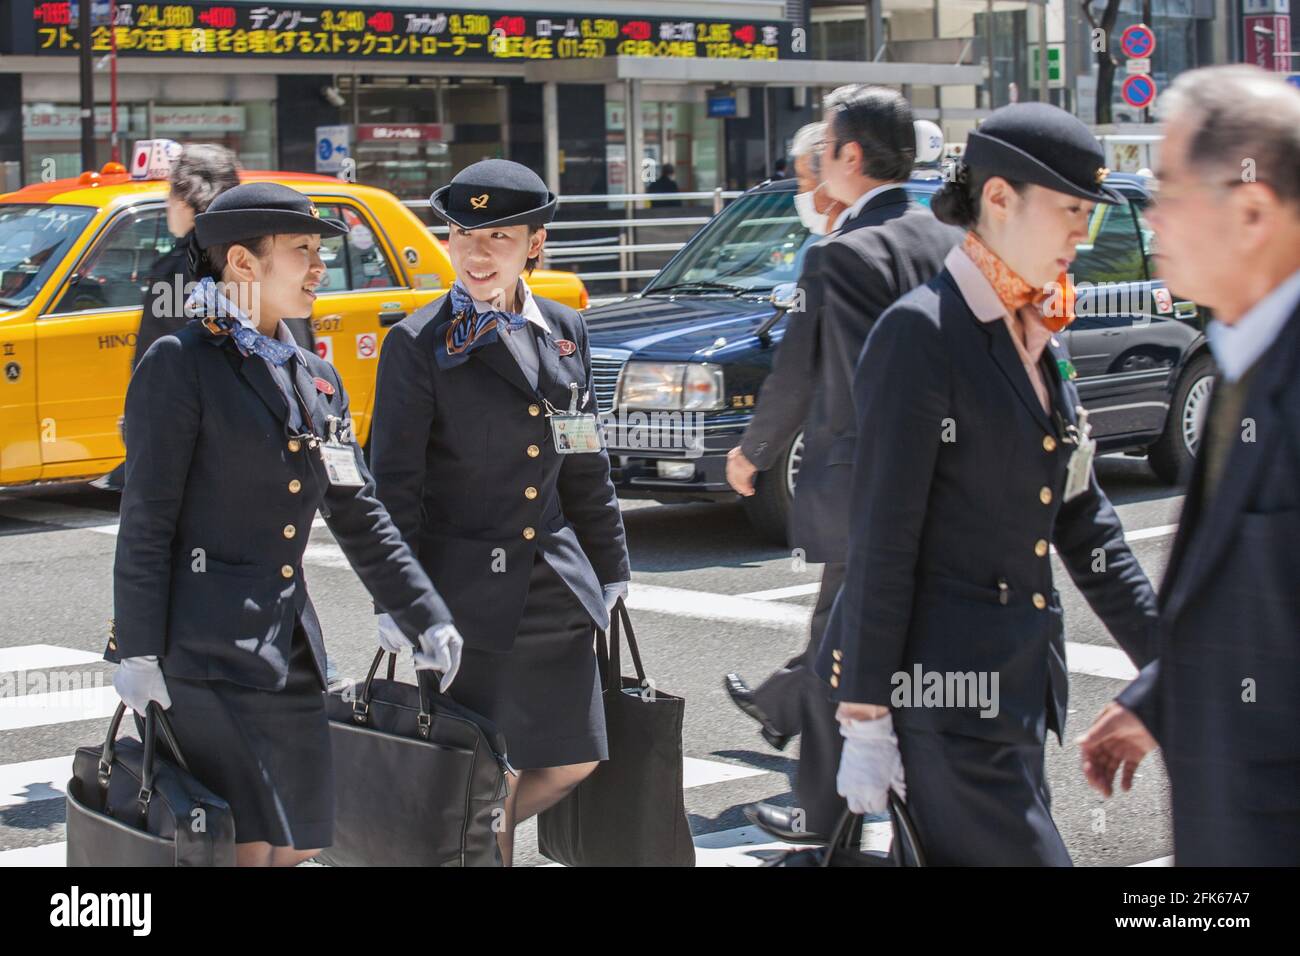 Three female off duty flight attendants wearing uniforms crossing busy zebra crossing in Ginza, Tokyo, Japan Stock Photo